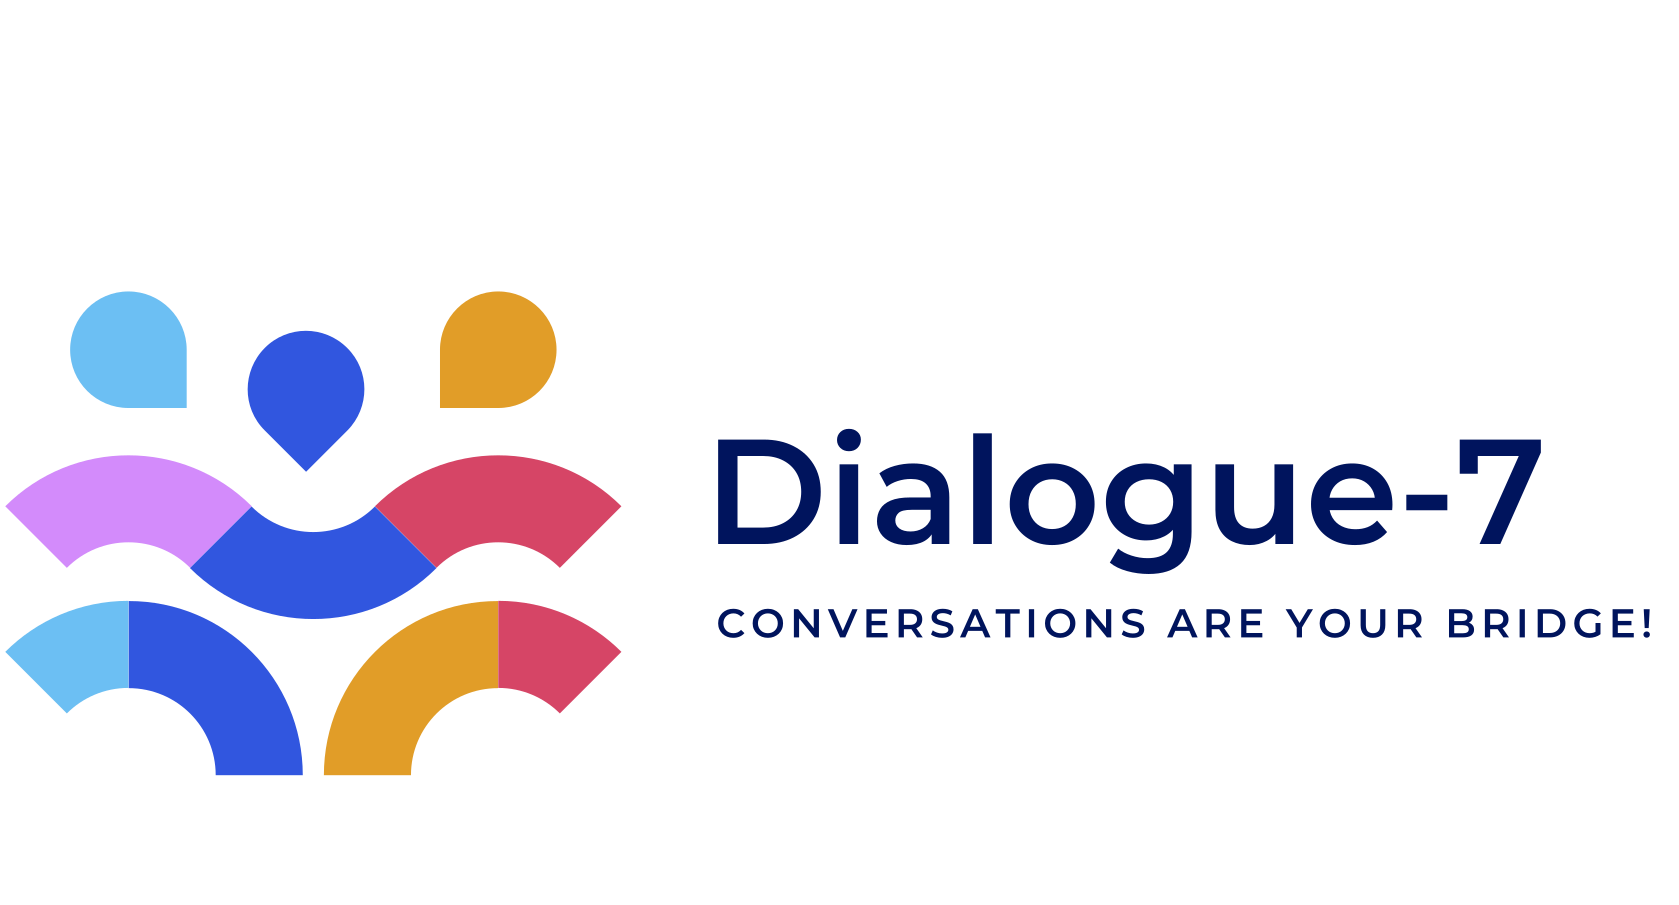 Dialogue-7